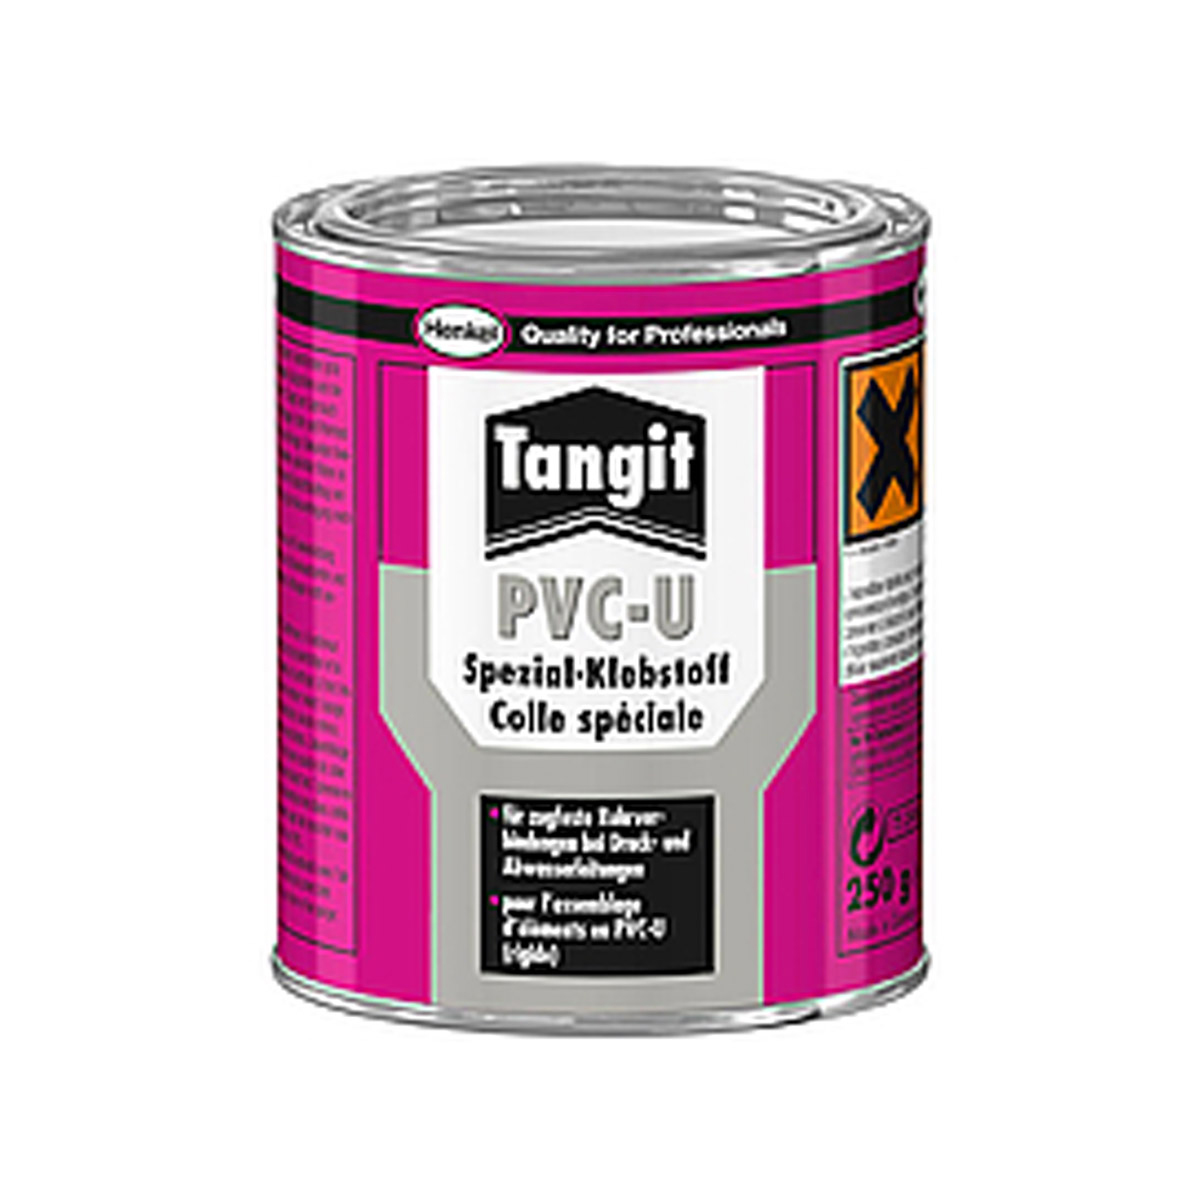 Tangit®PVC-U Spezial-Klebstoff 125g Tangit®PVC-U Spezial-Klebstoff 125g